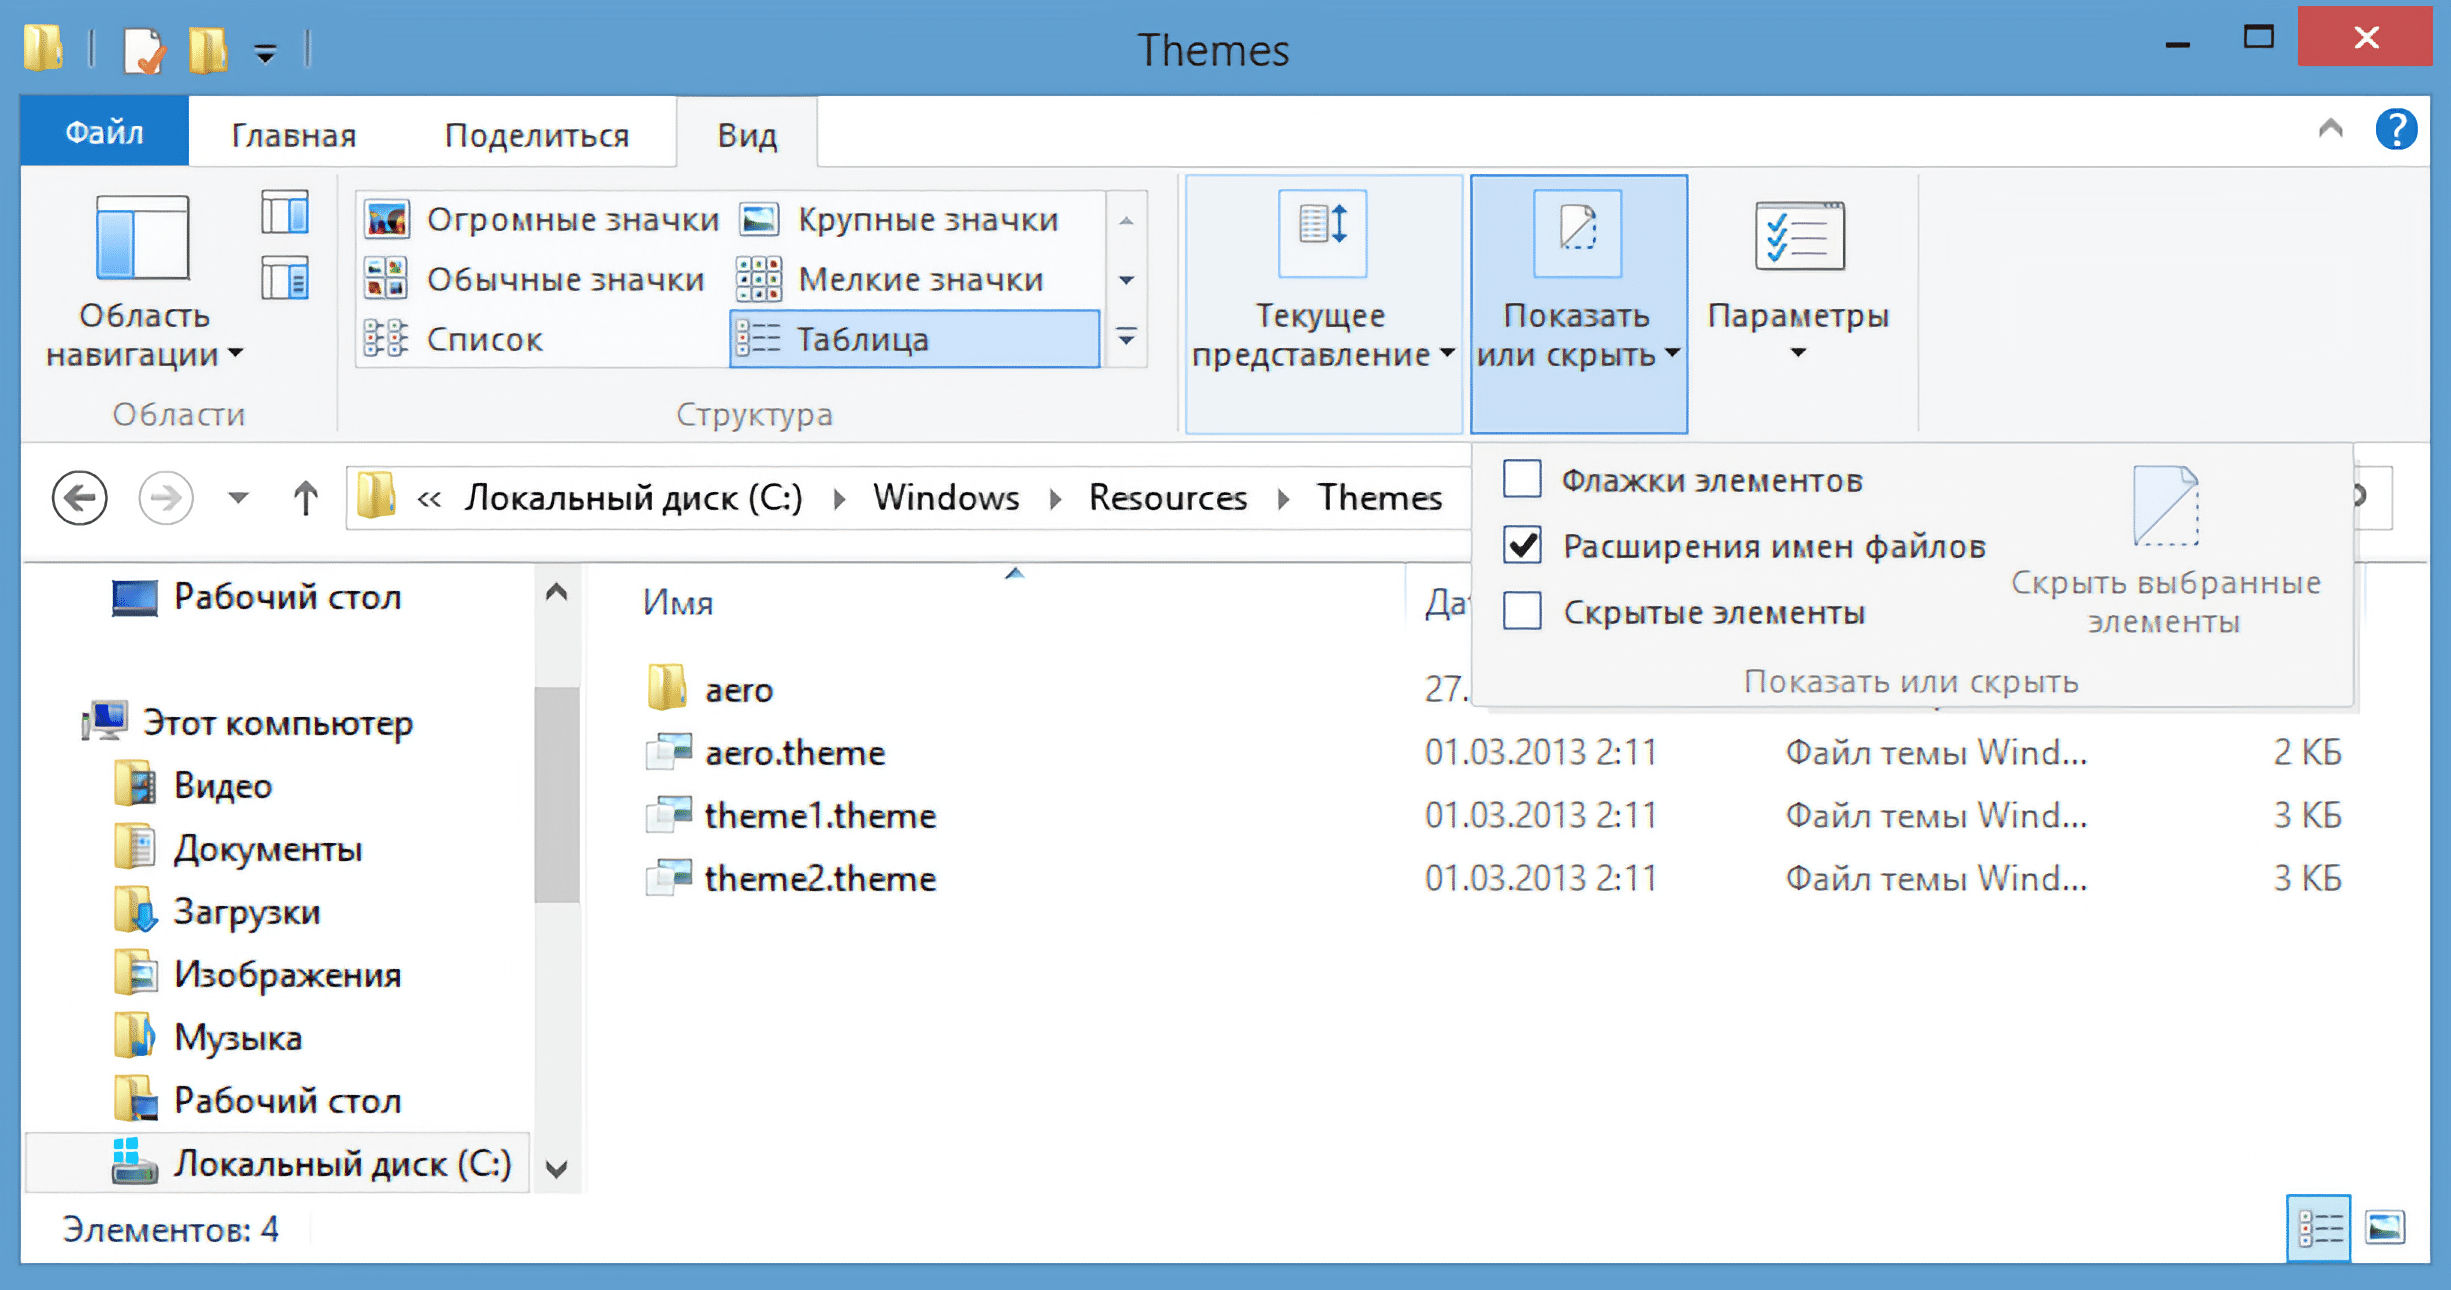 В некоторых версиях Windows 10 пункта «Показать или скрыть» нет, а флажок «Скрытые элементы» отображается прямо на вкладке «Вид». Источник: answers.microsoft.com